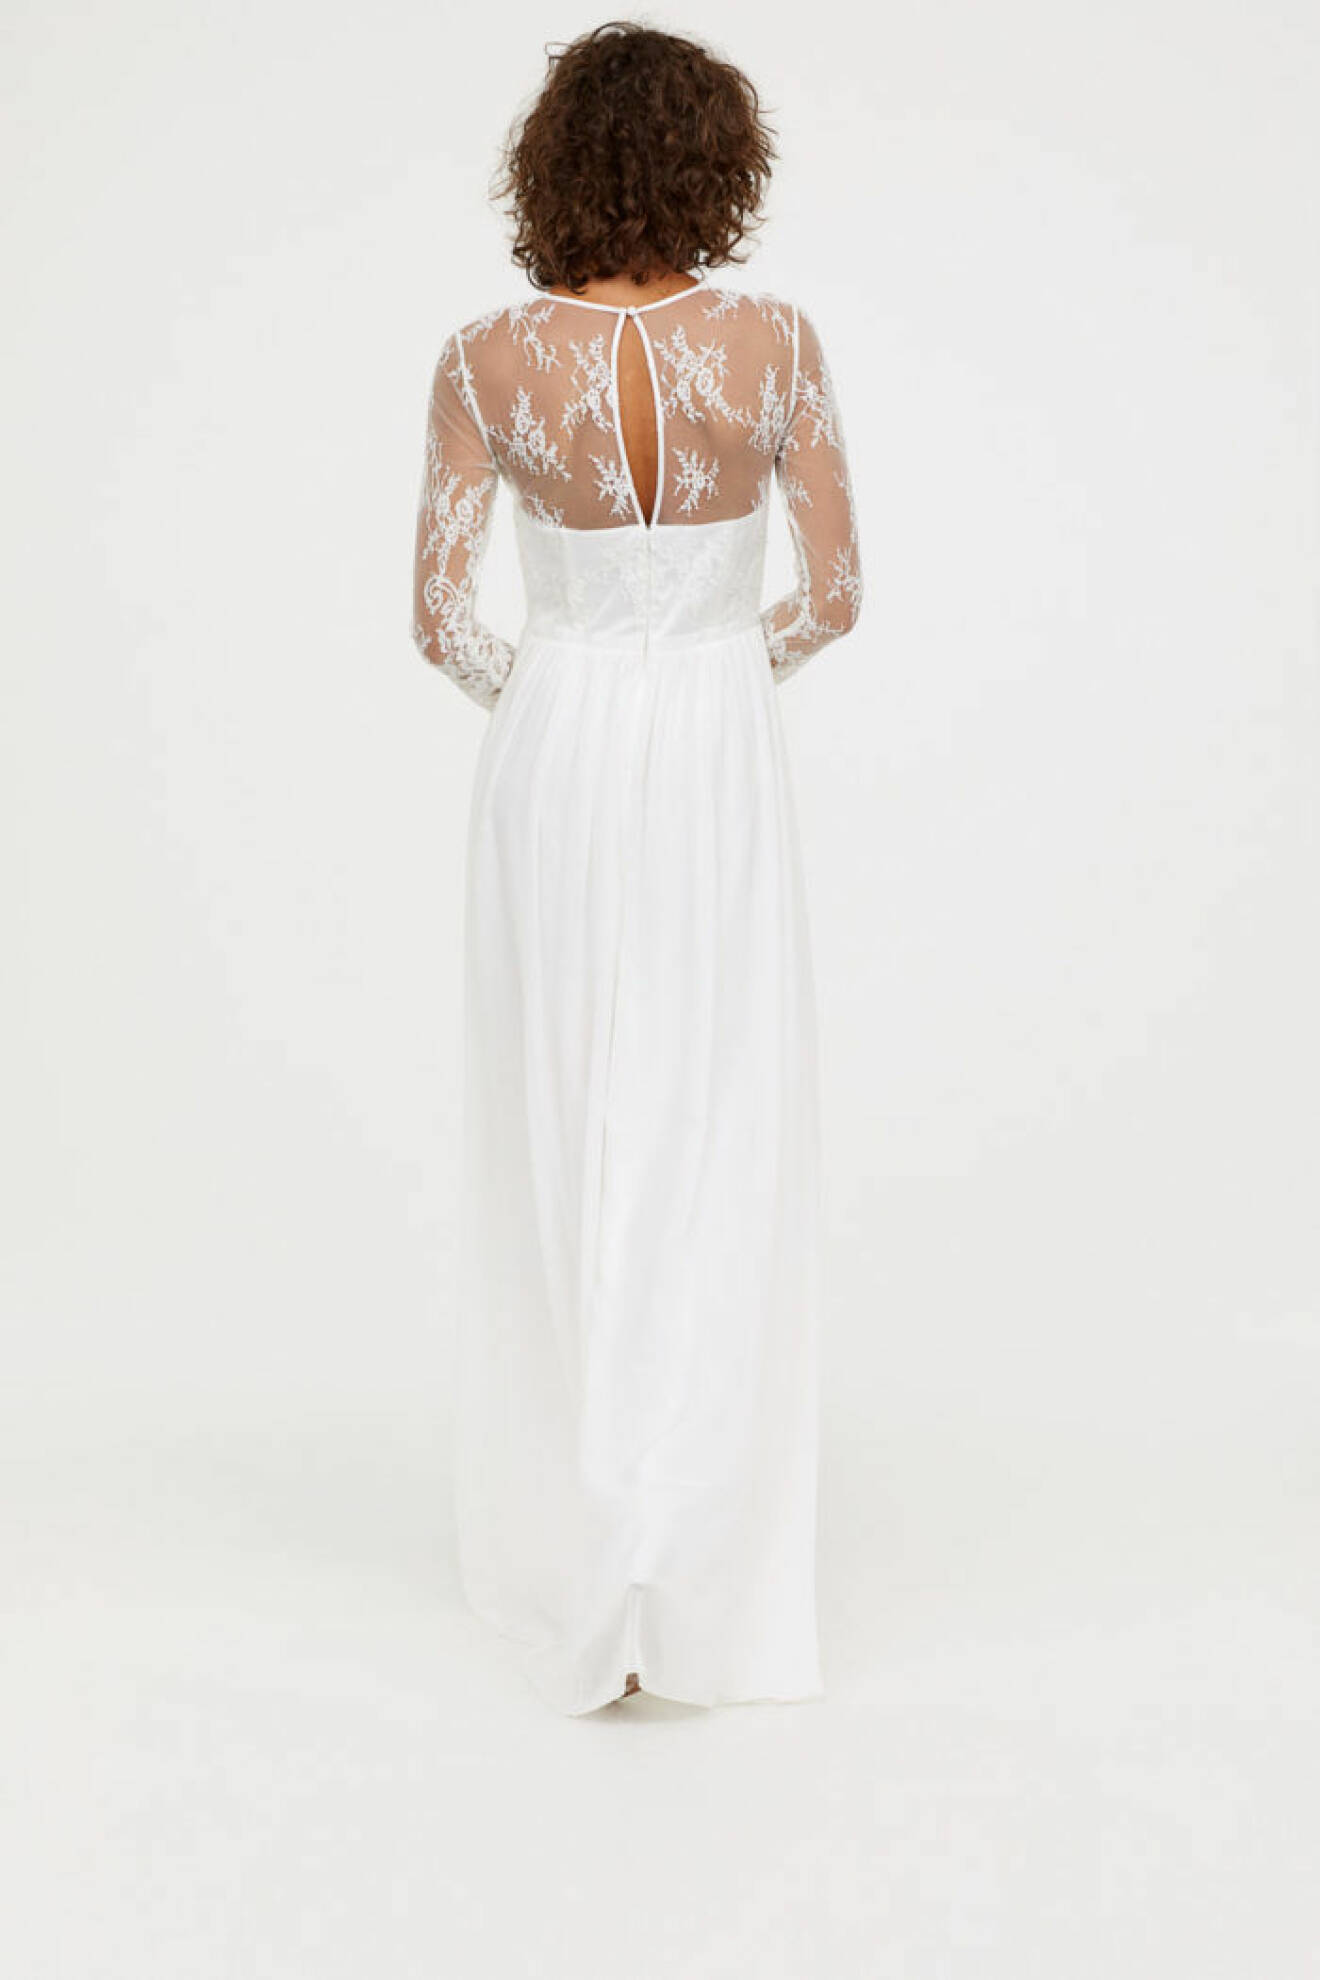 H&M släpper brudkollektion, spetsklänning med ärmar bakifrån.